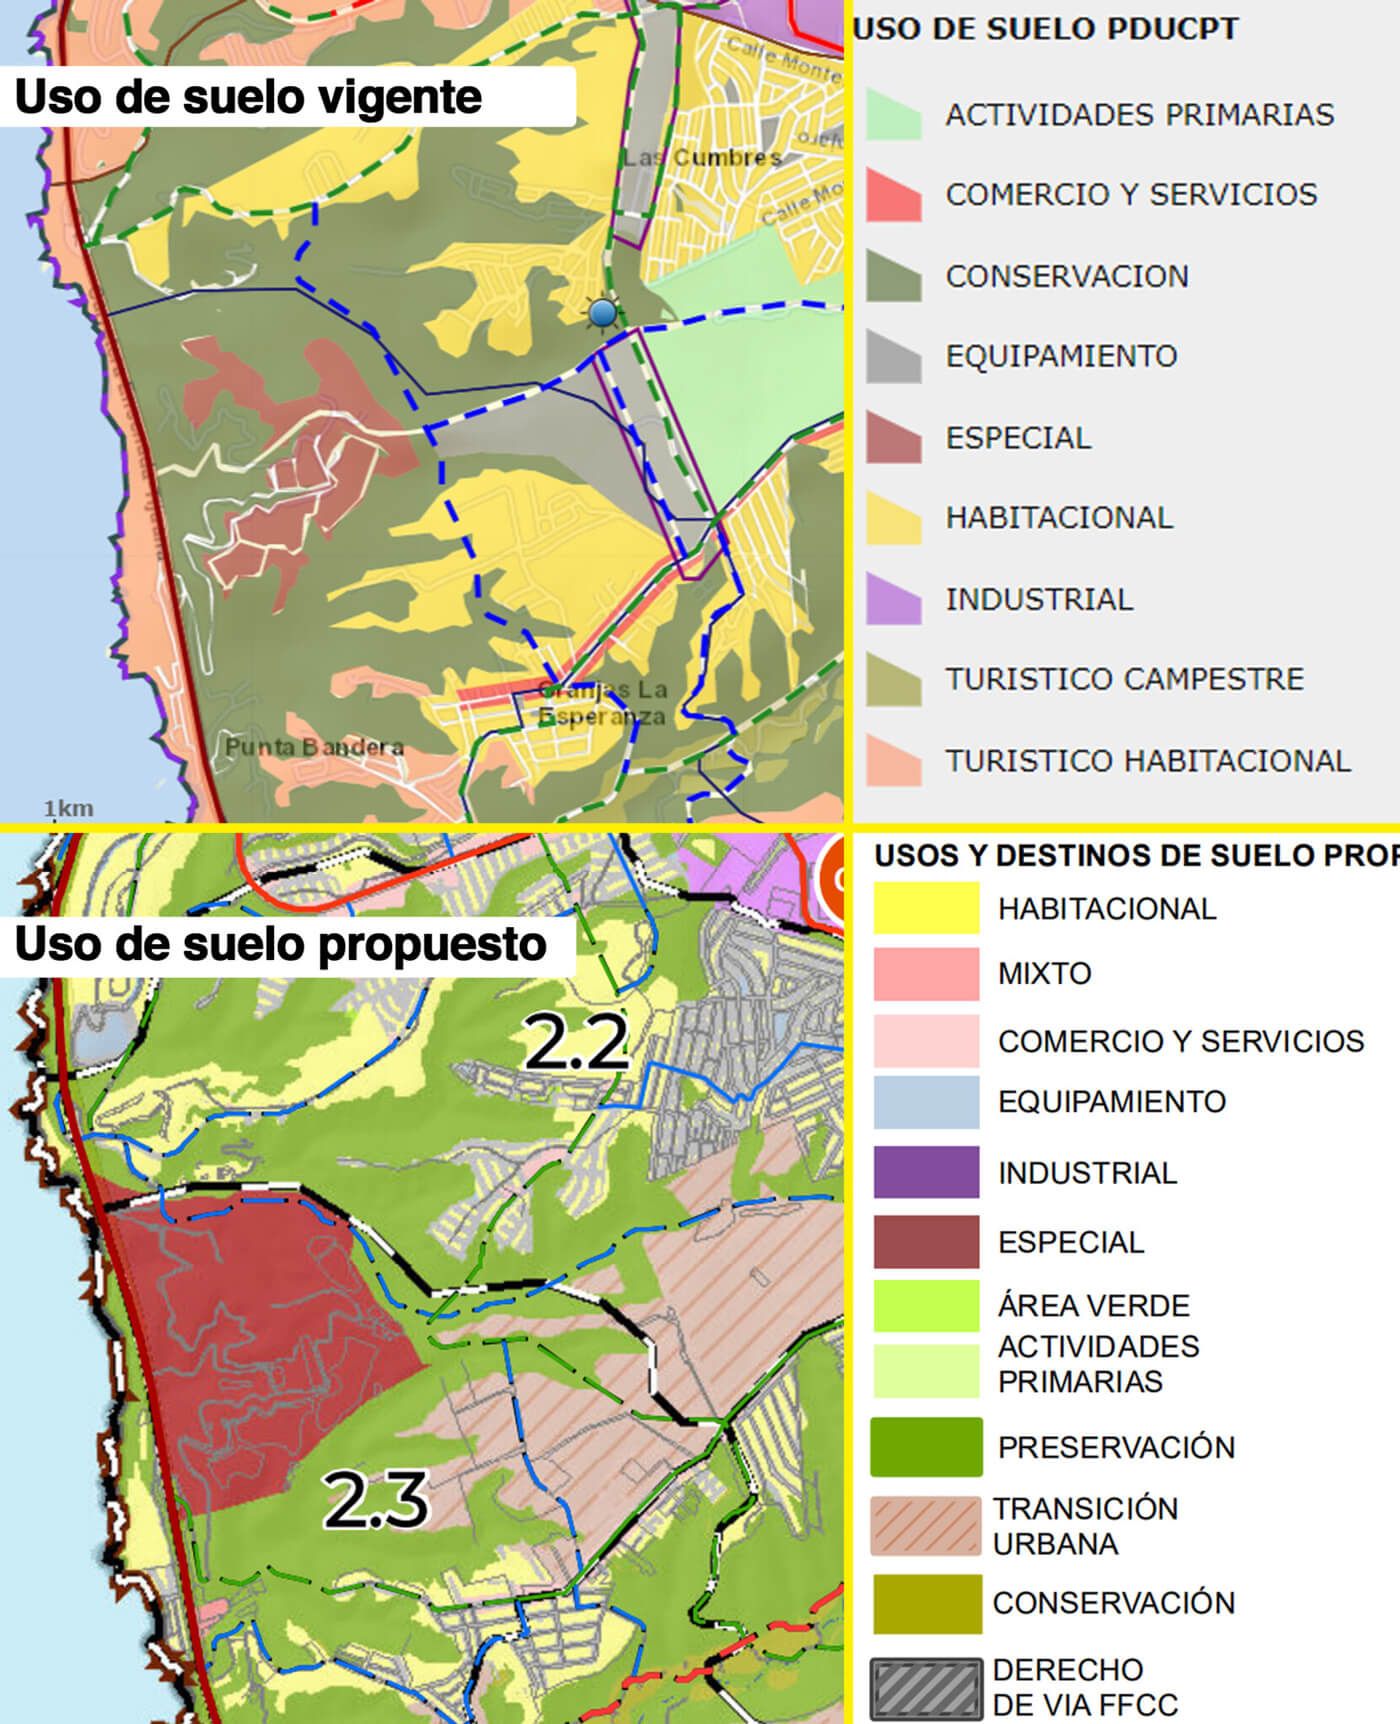 map de uso de suelo vigente en Tijuana